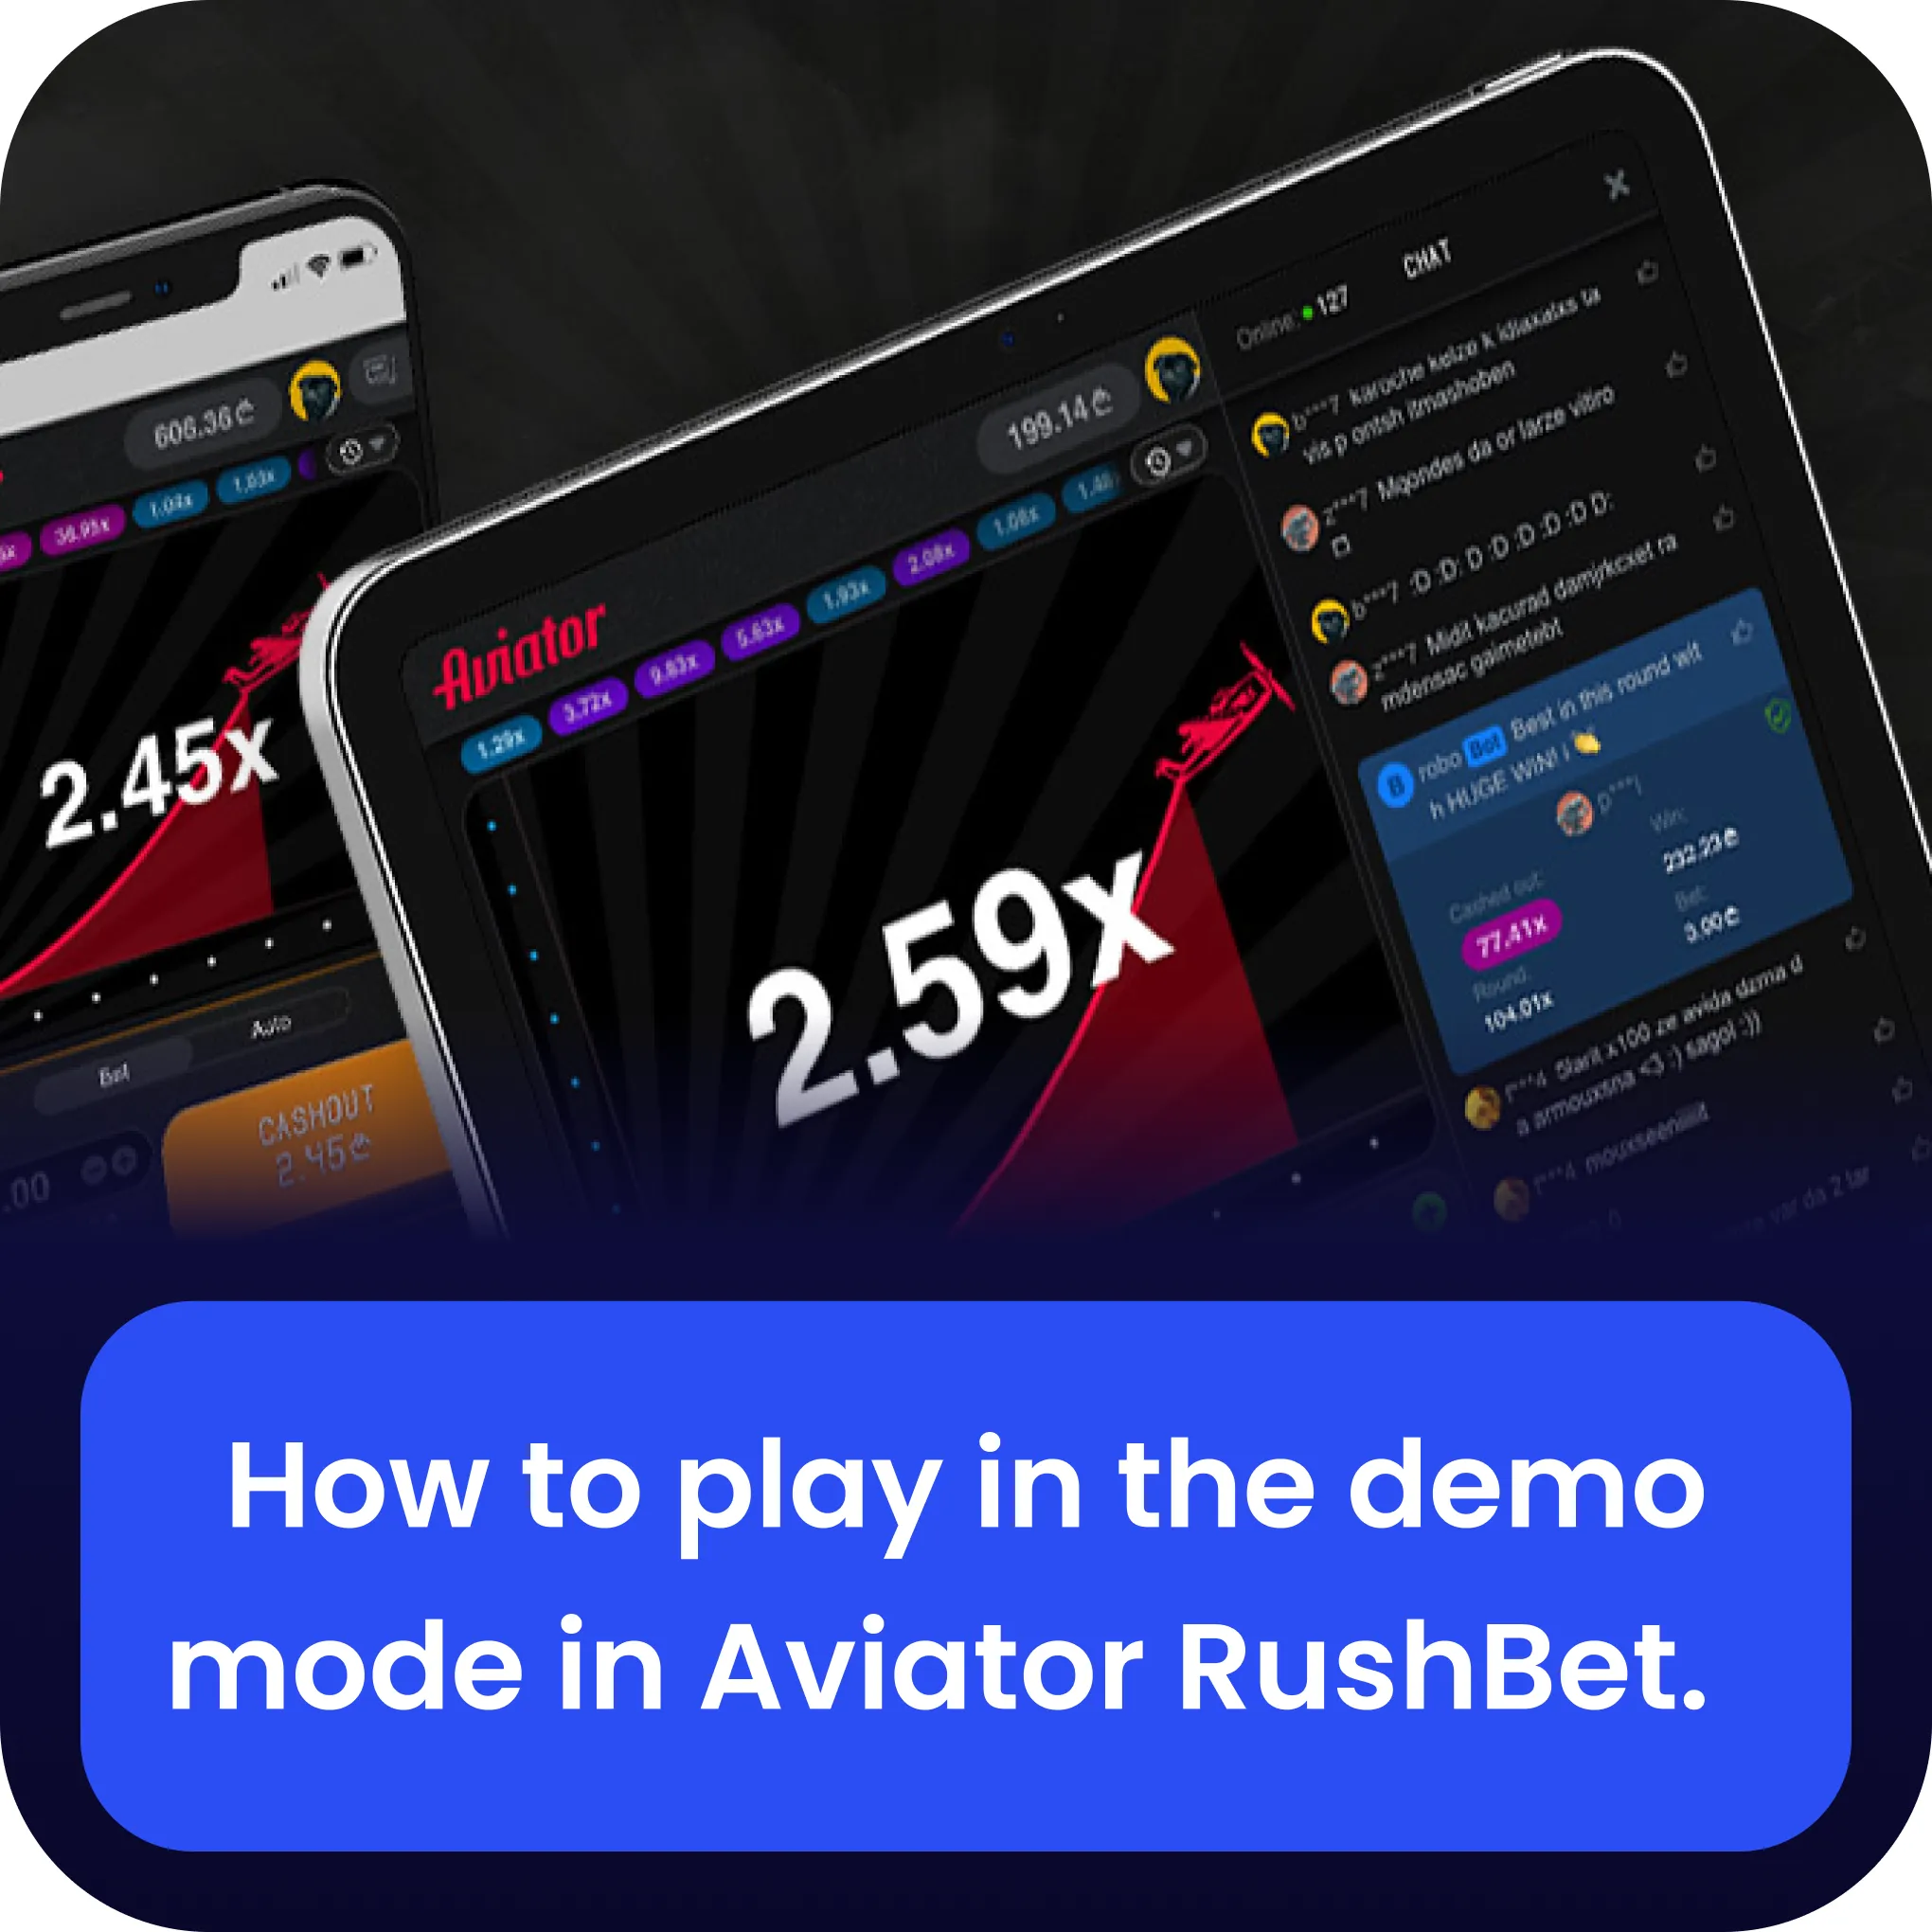 rushbet aviator demo version